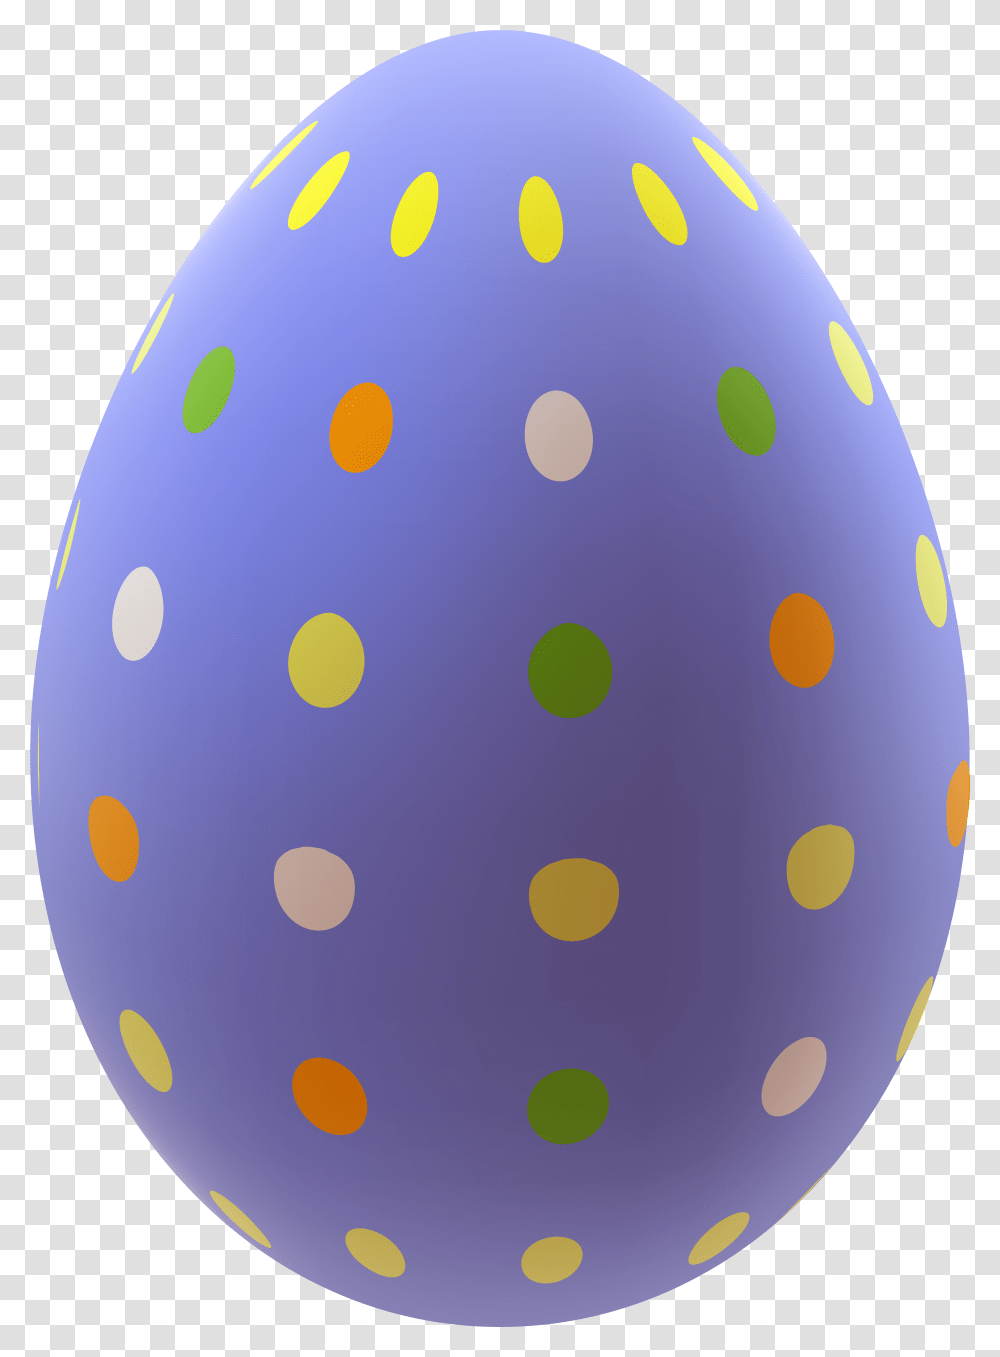 Download Free Easter Egg Background Easter Egg, Balloon, Food Transparent Png